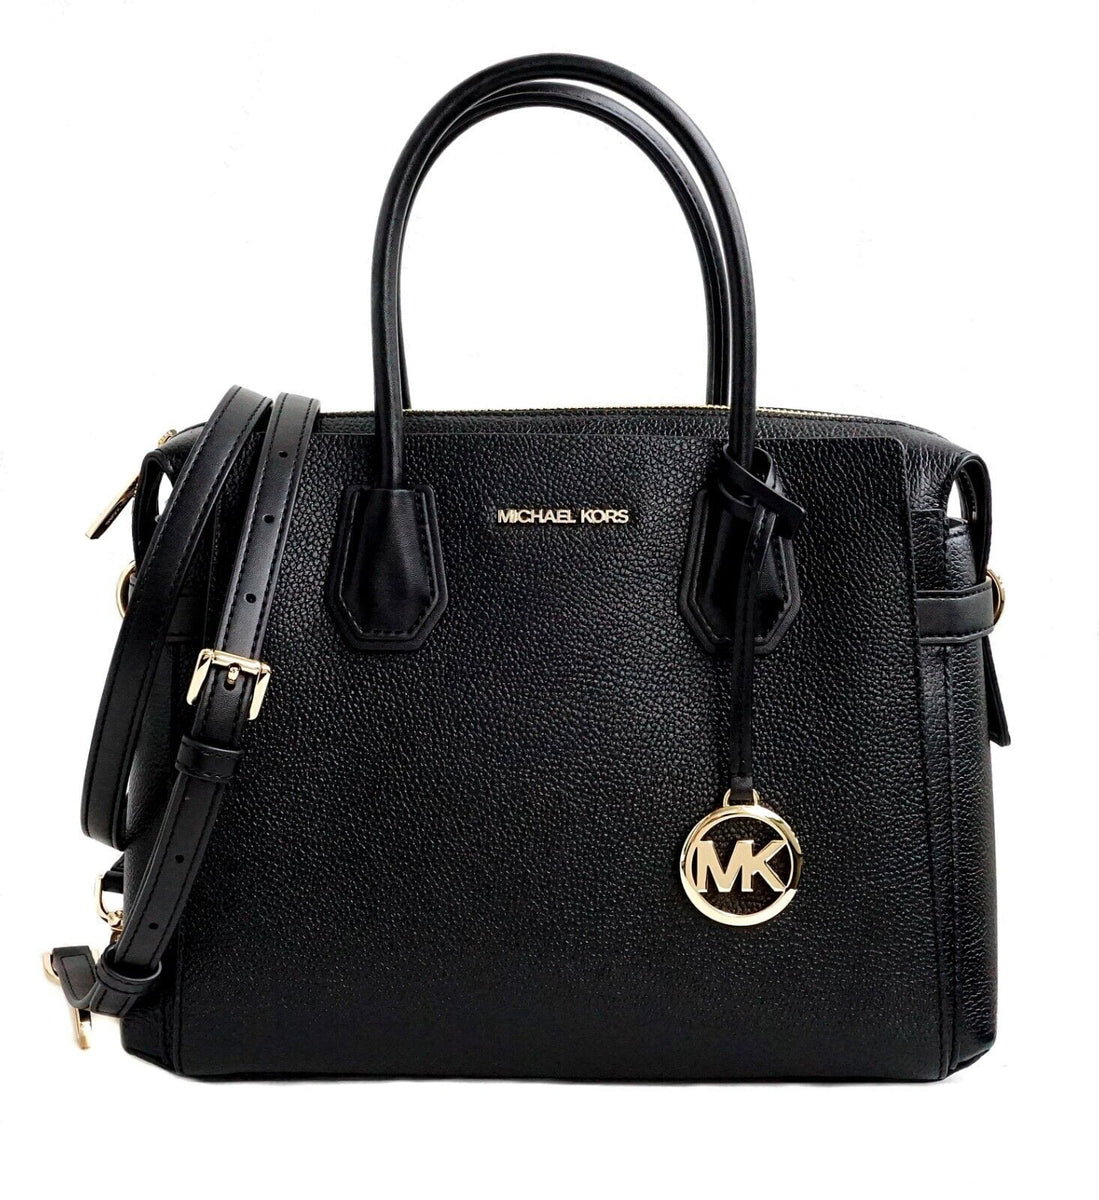 Michael Kors Mercer large pebbled leather handbag used